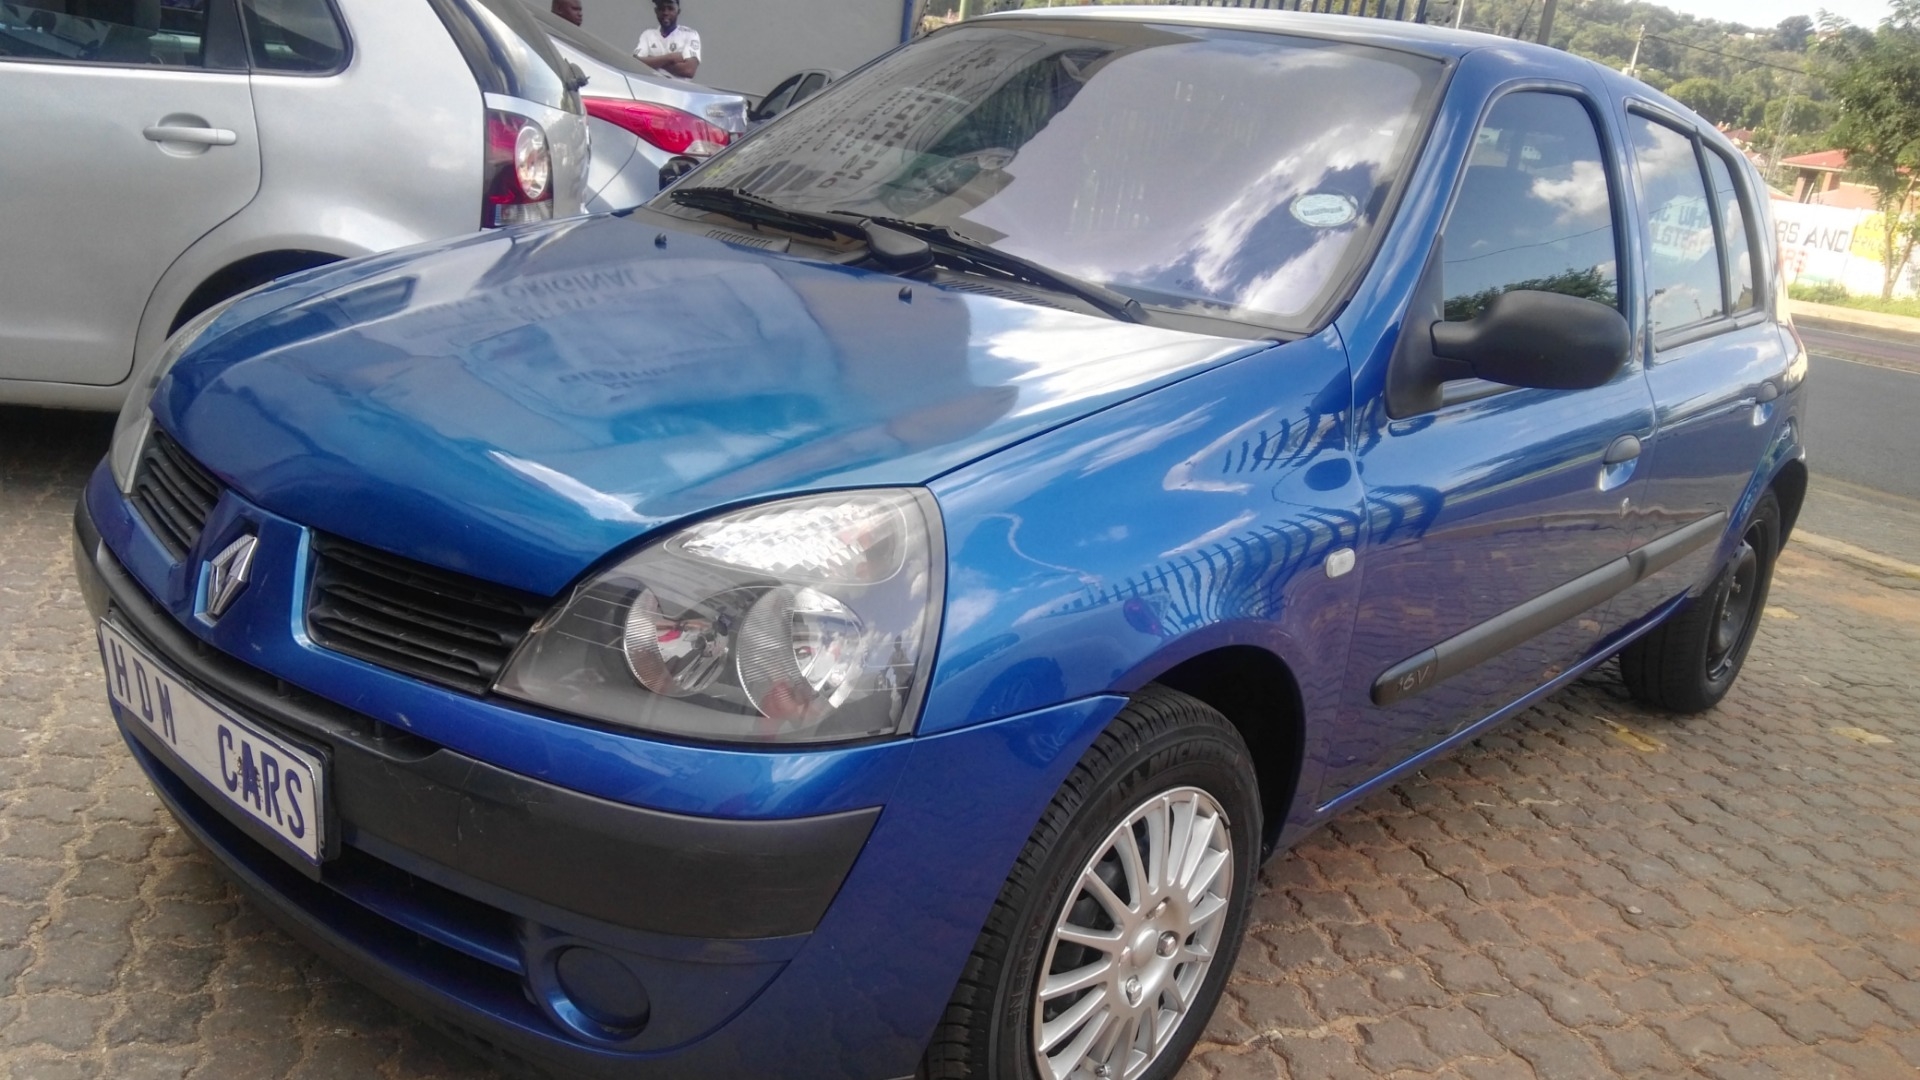 Renault Clio 1.4 Expression 5 door for sale in Gauteng